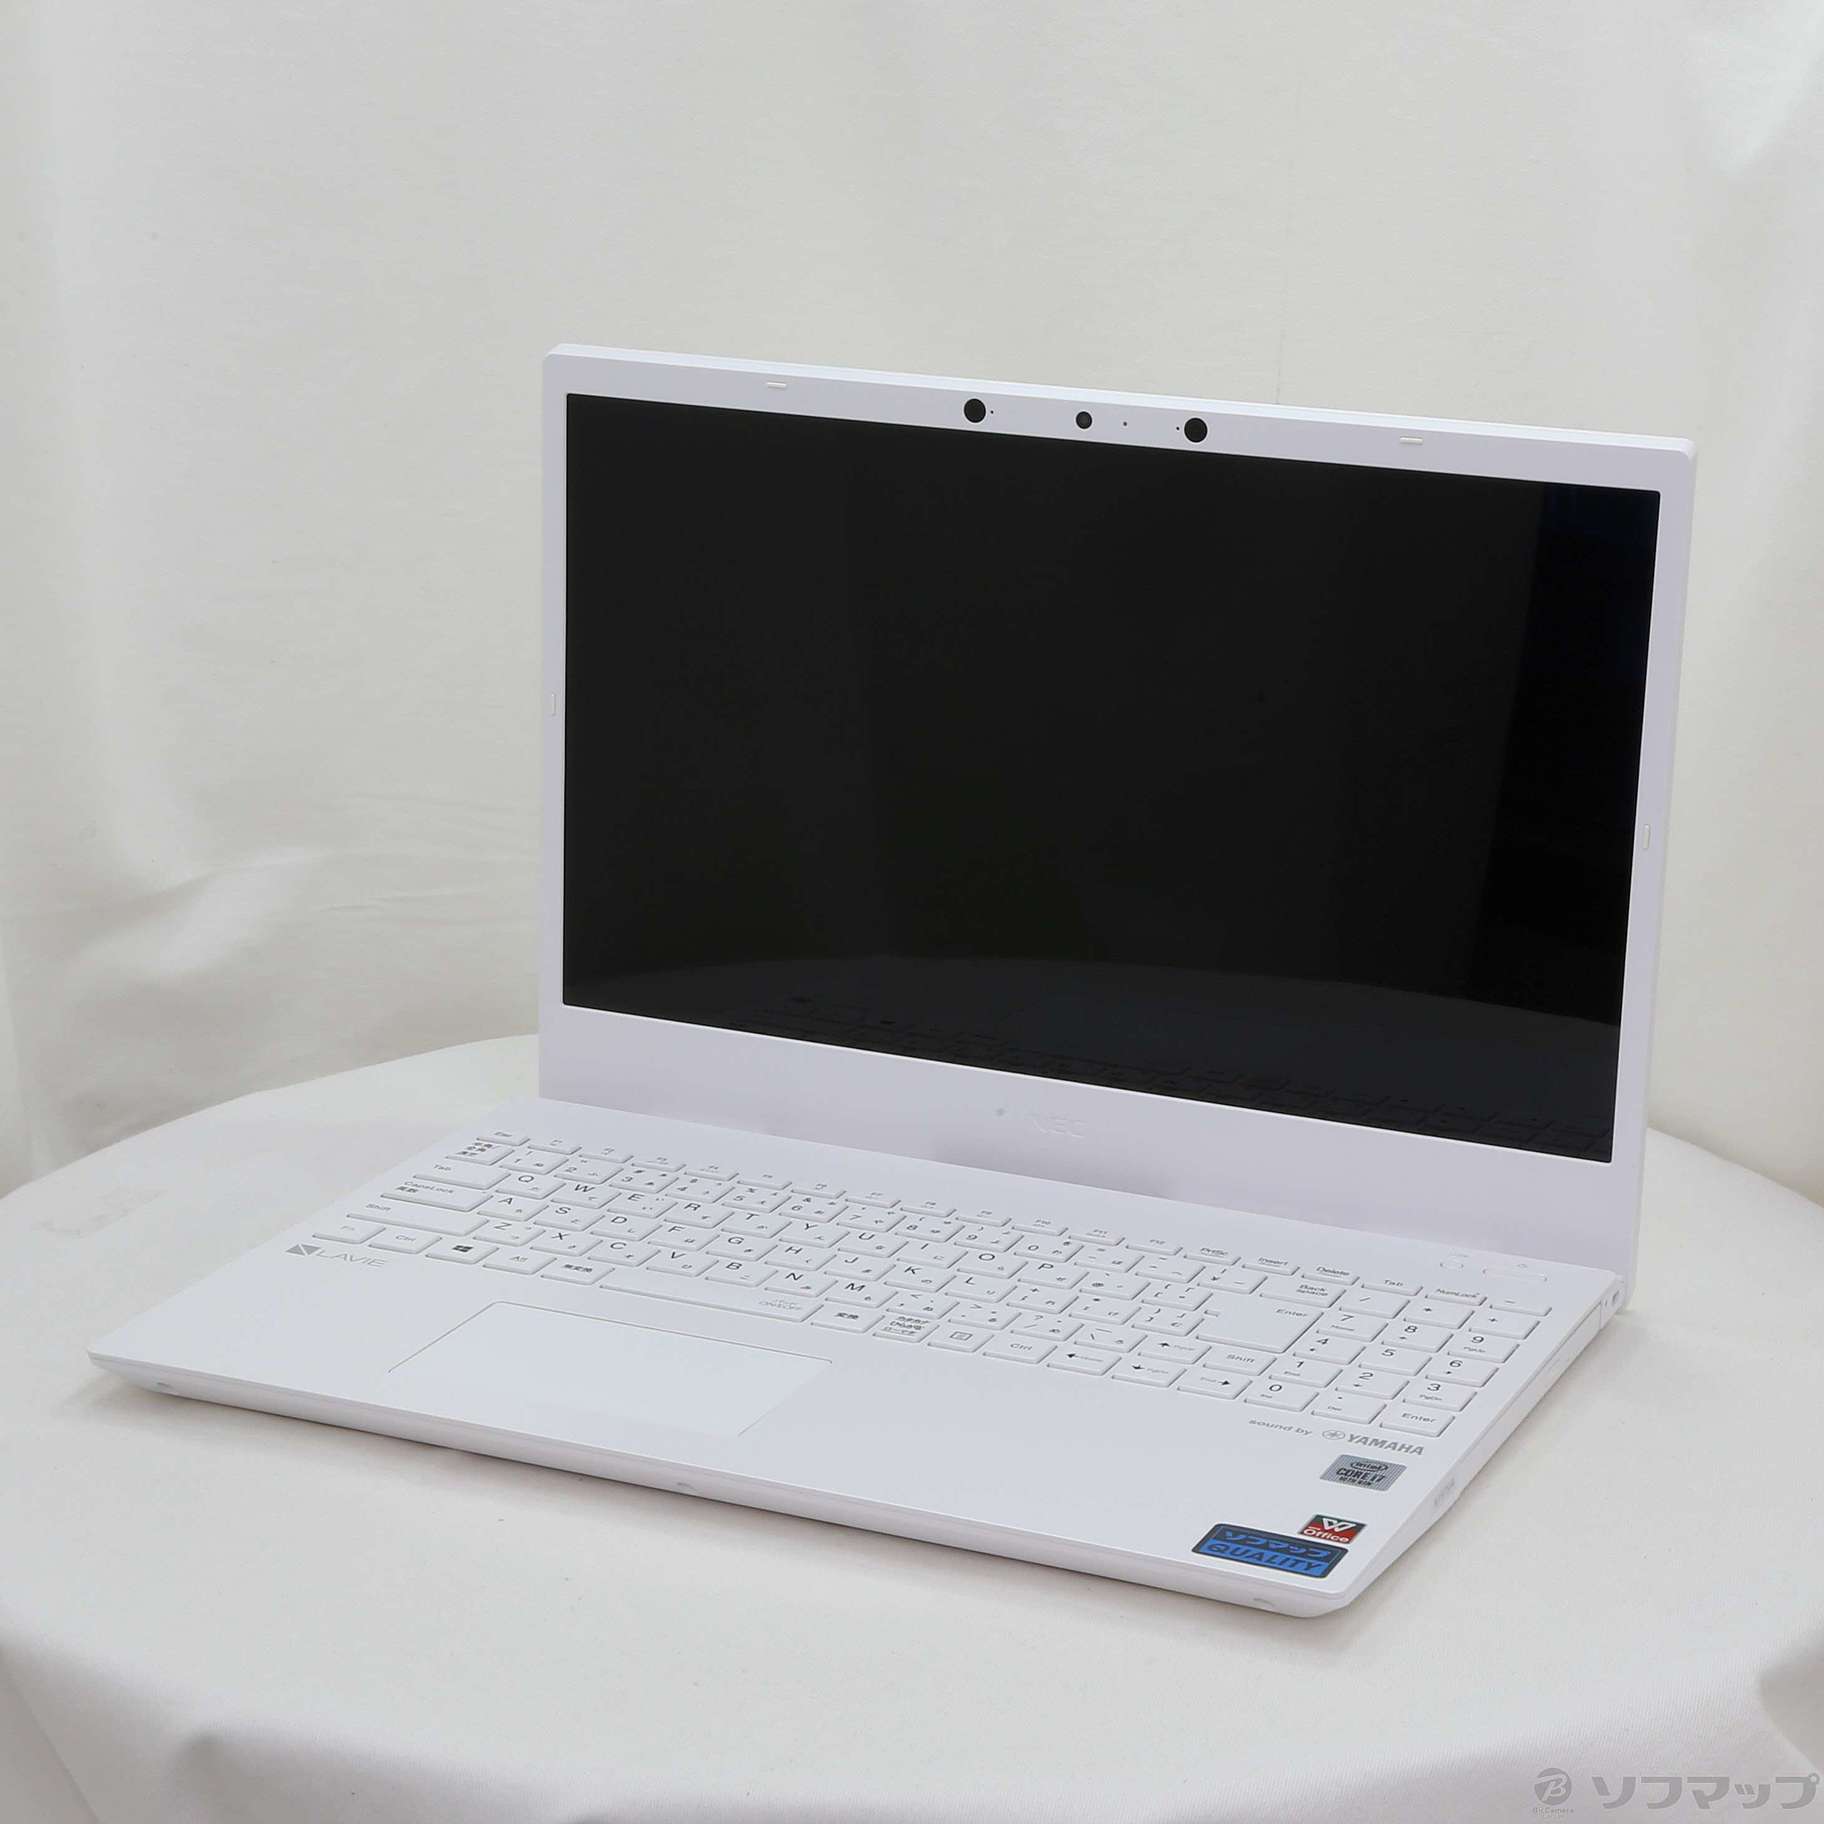 LaVie N15 N1575／AAW PC-N1575AAW パールホワイト 〔Windows 10〕